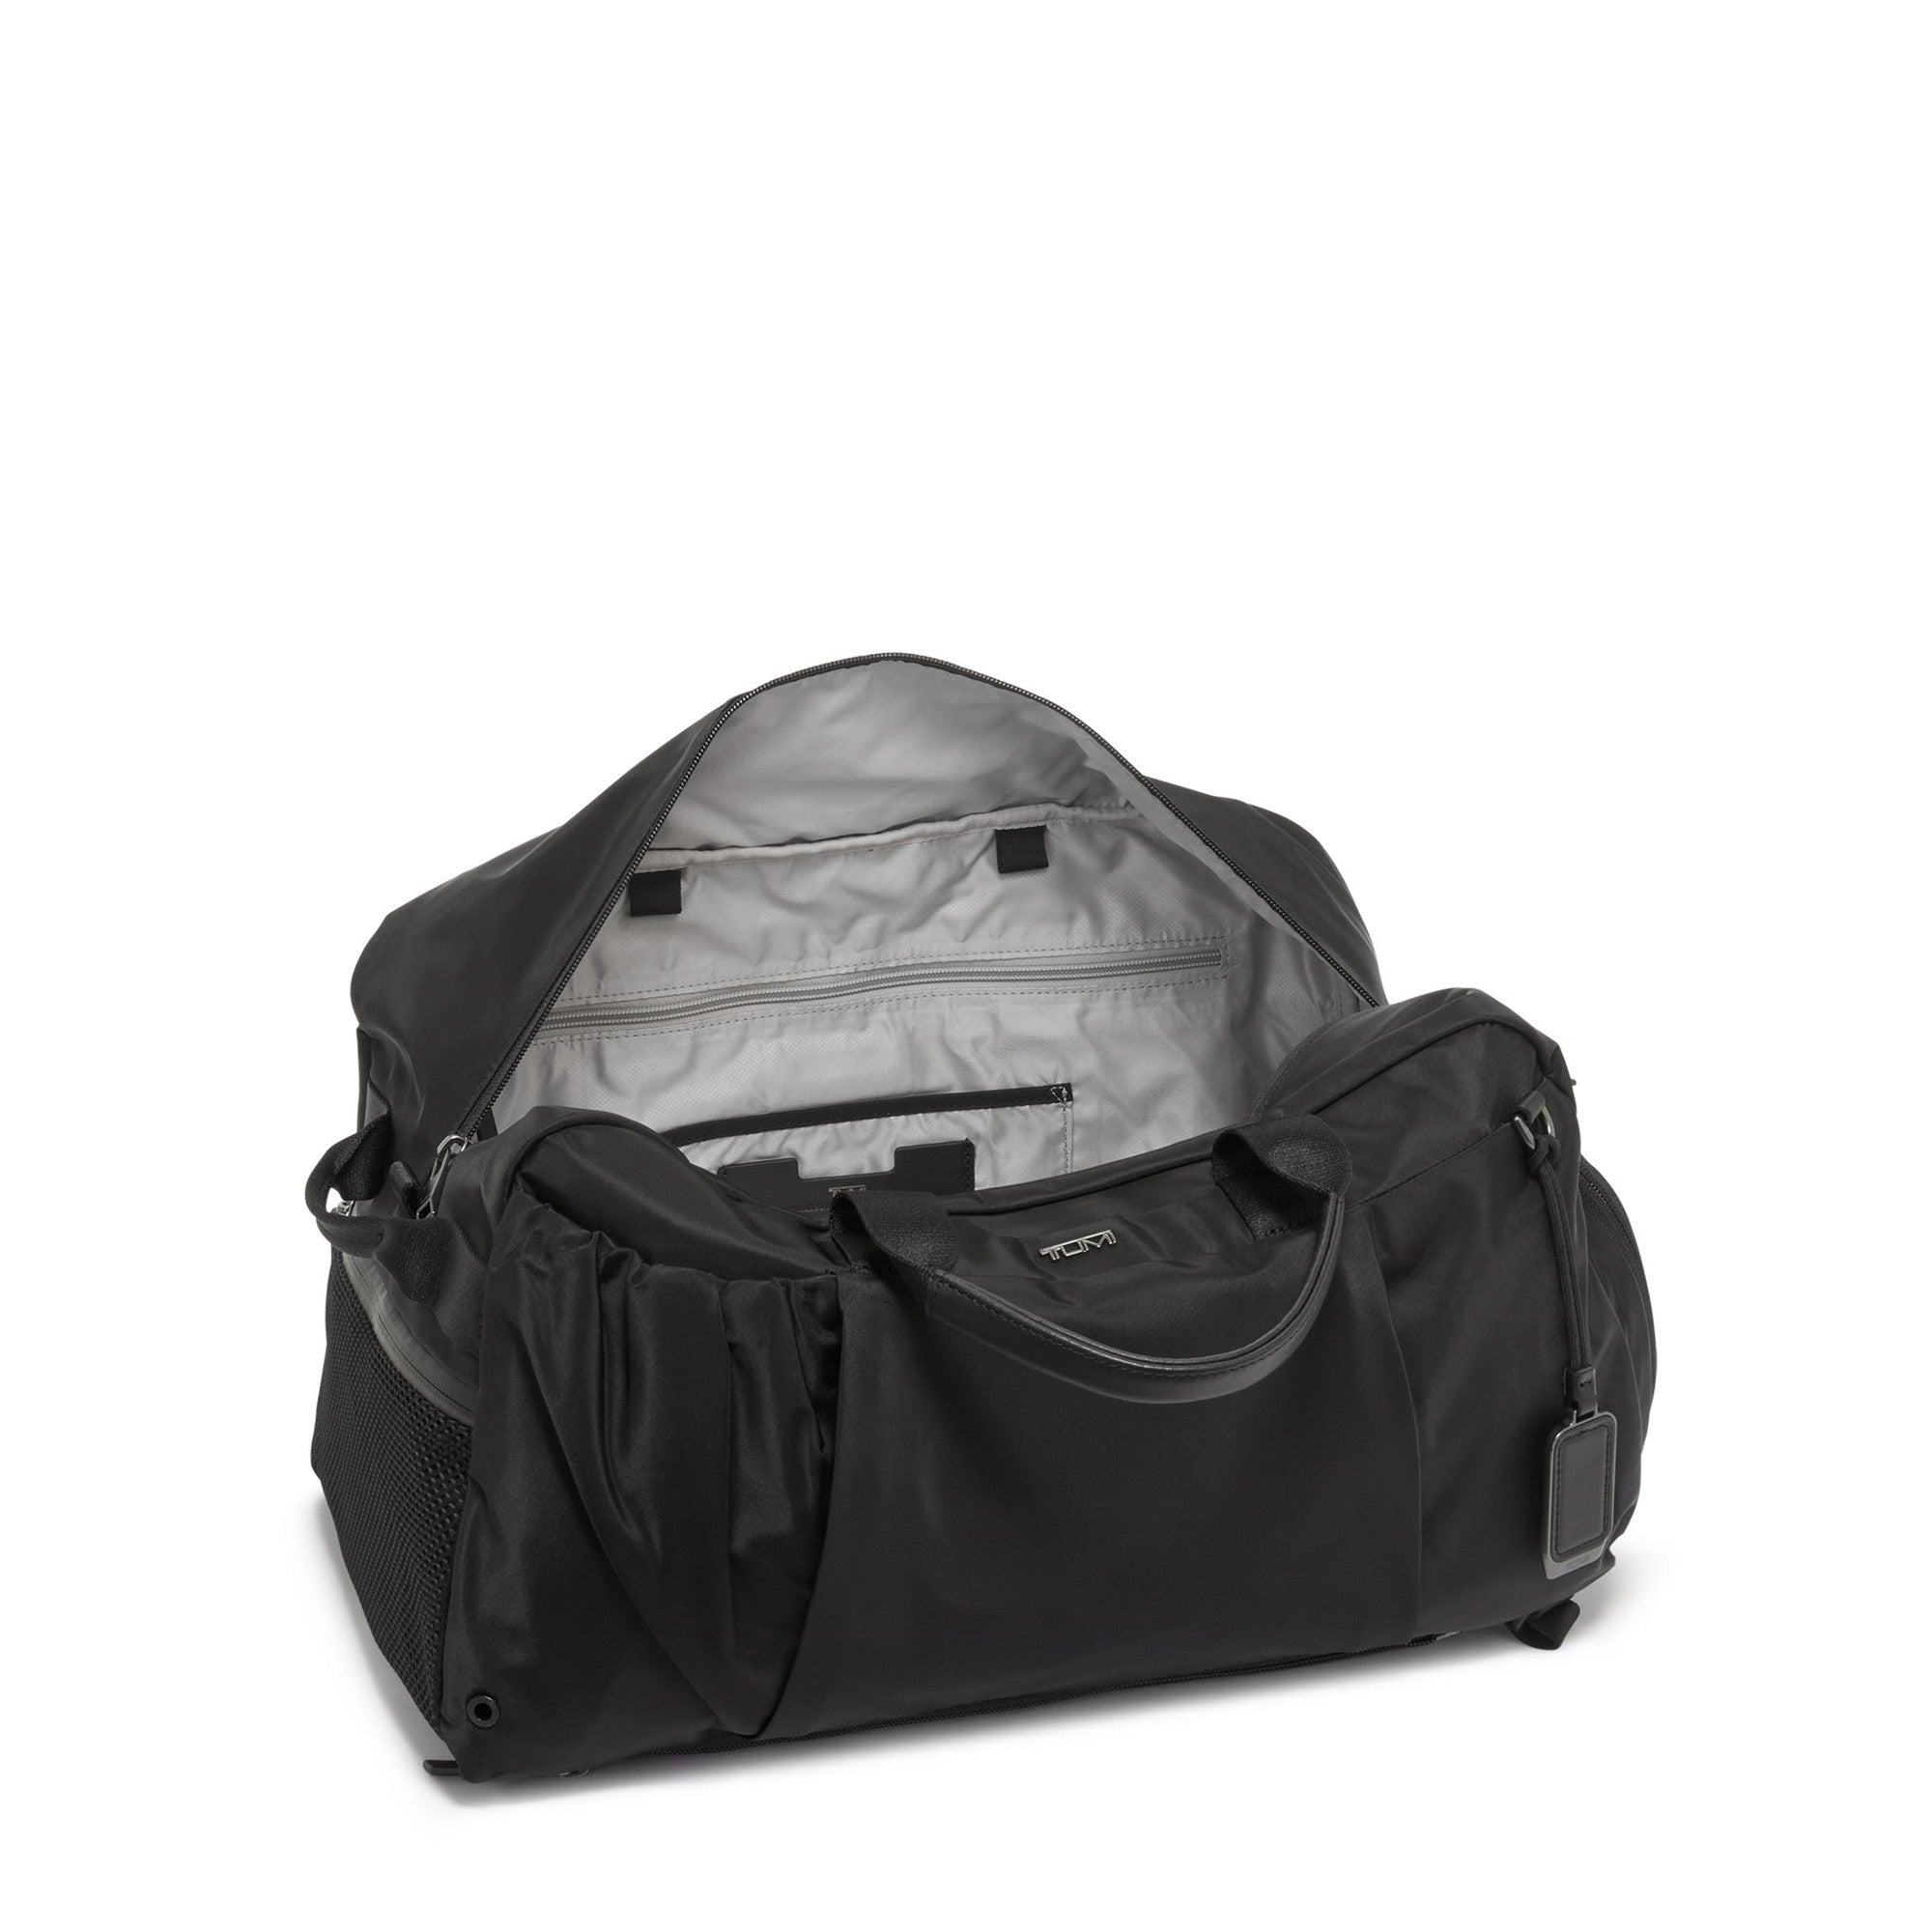 TUMI Voyageur Malta Duffel/Backpack – Luggage Pros